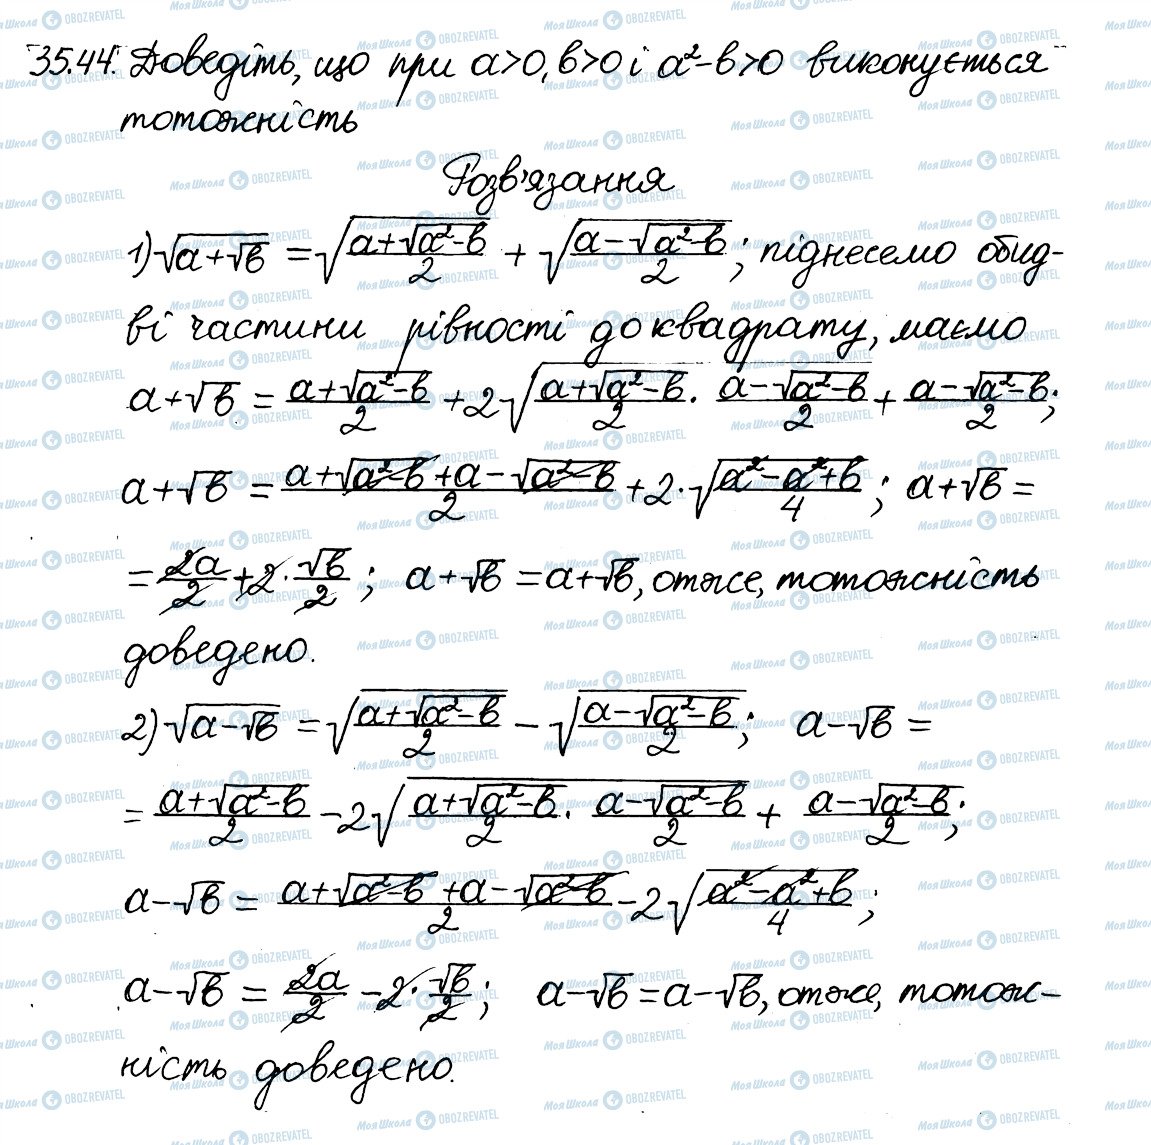 ГДЗ Алгебра 8 класс страница 44